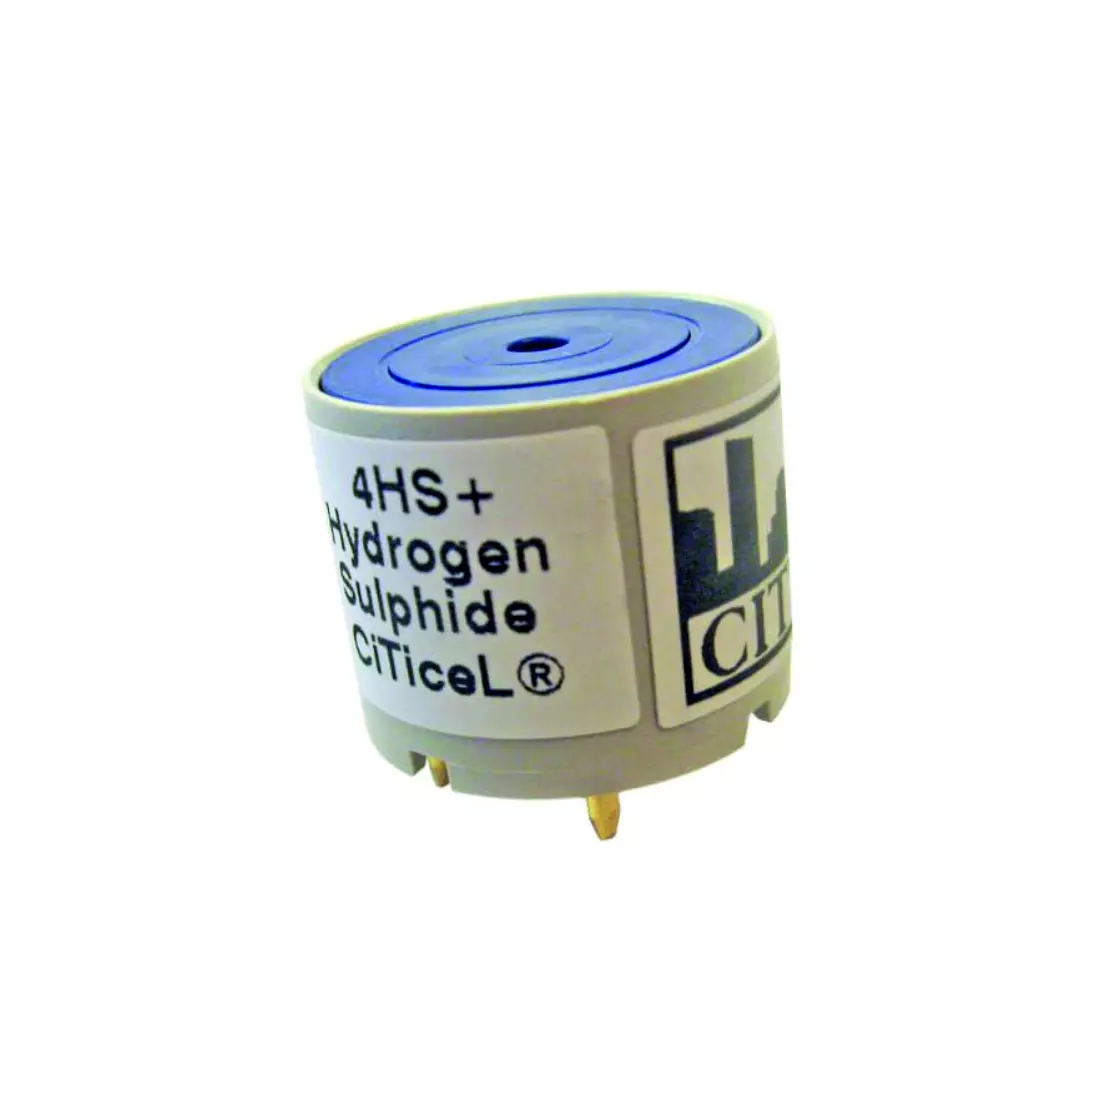 Датчик (сенсор) сероводорода 4HS+ CiTiceL